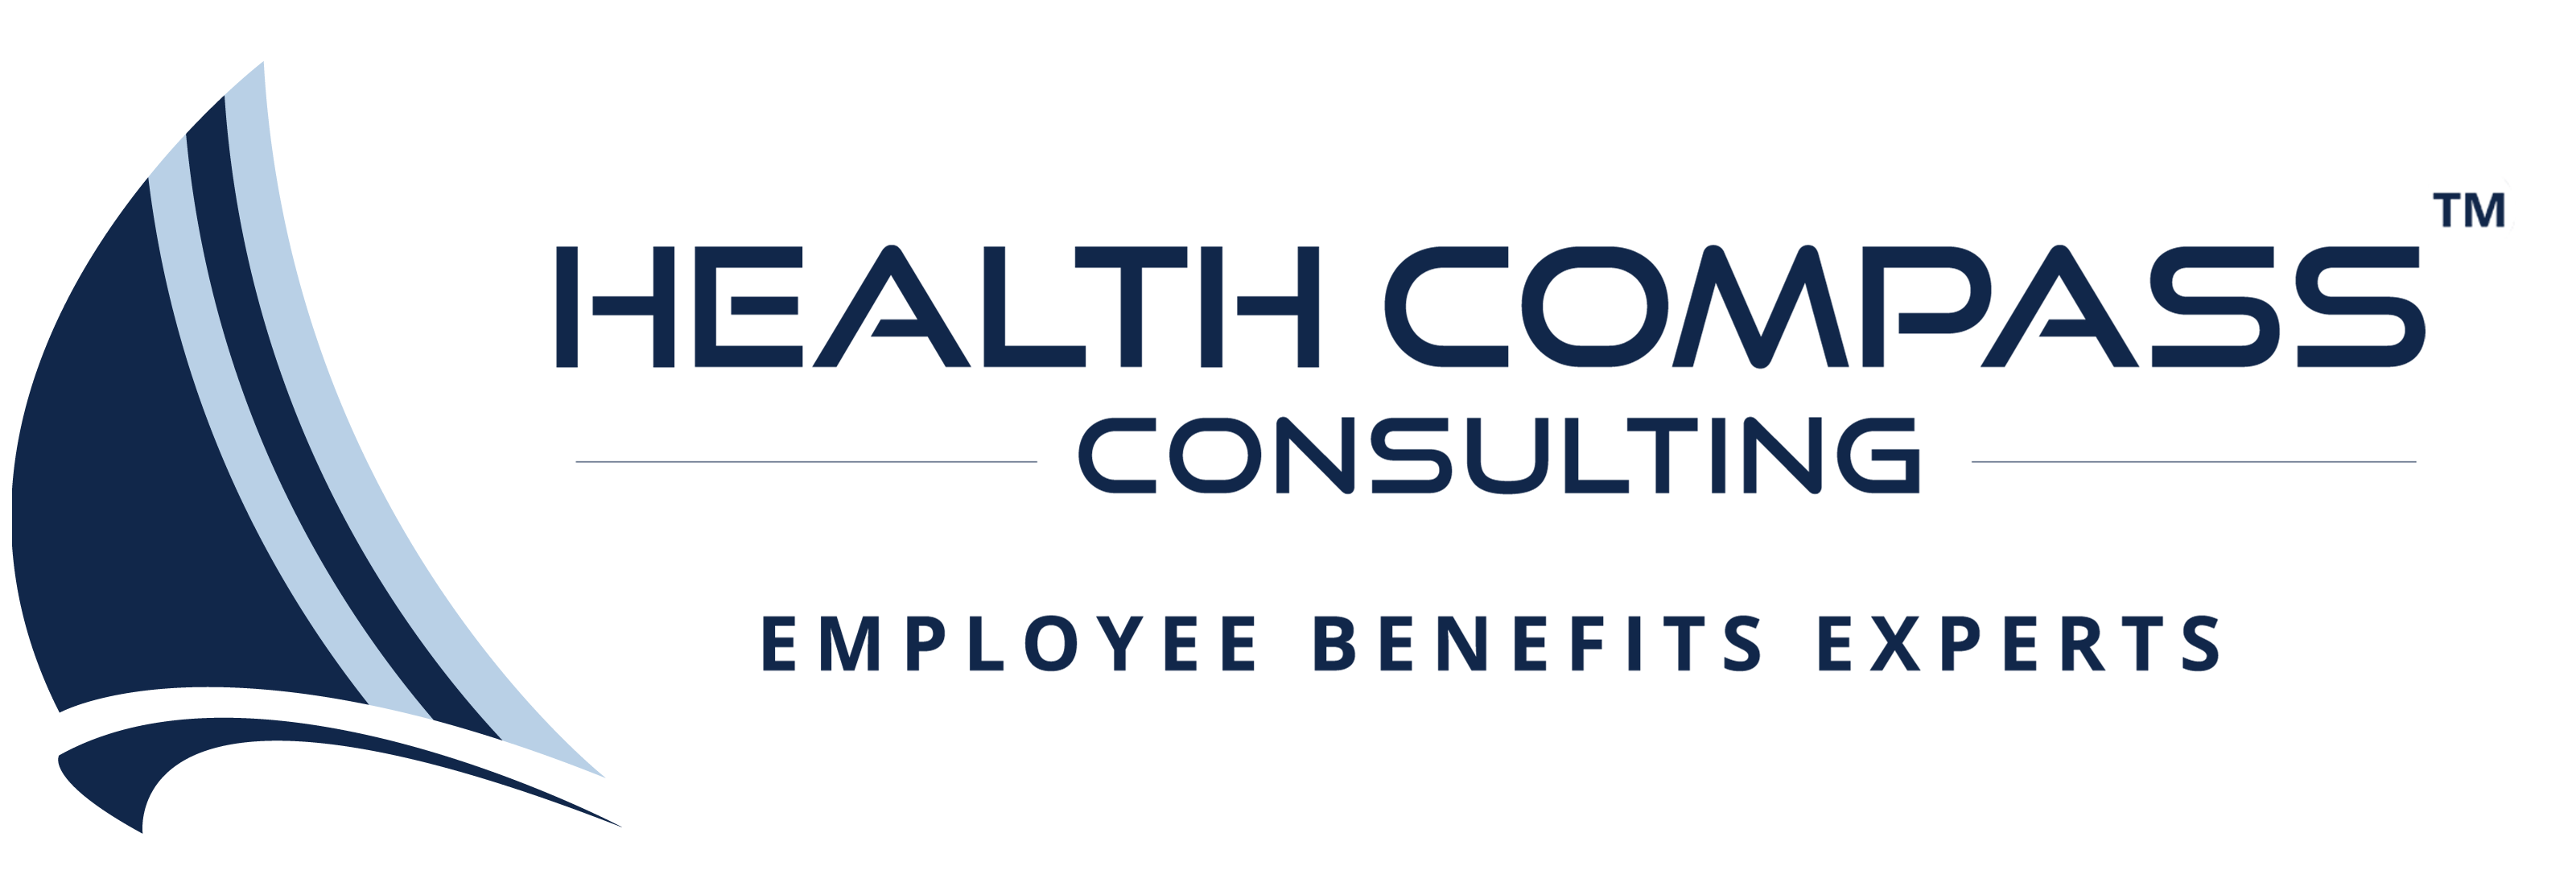 Health Compas logo2 43